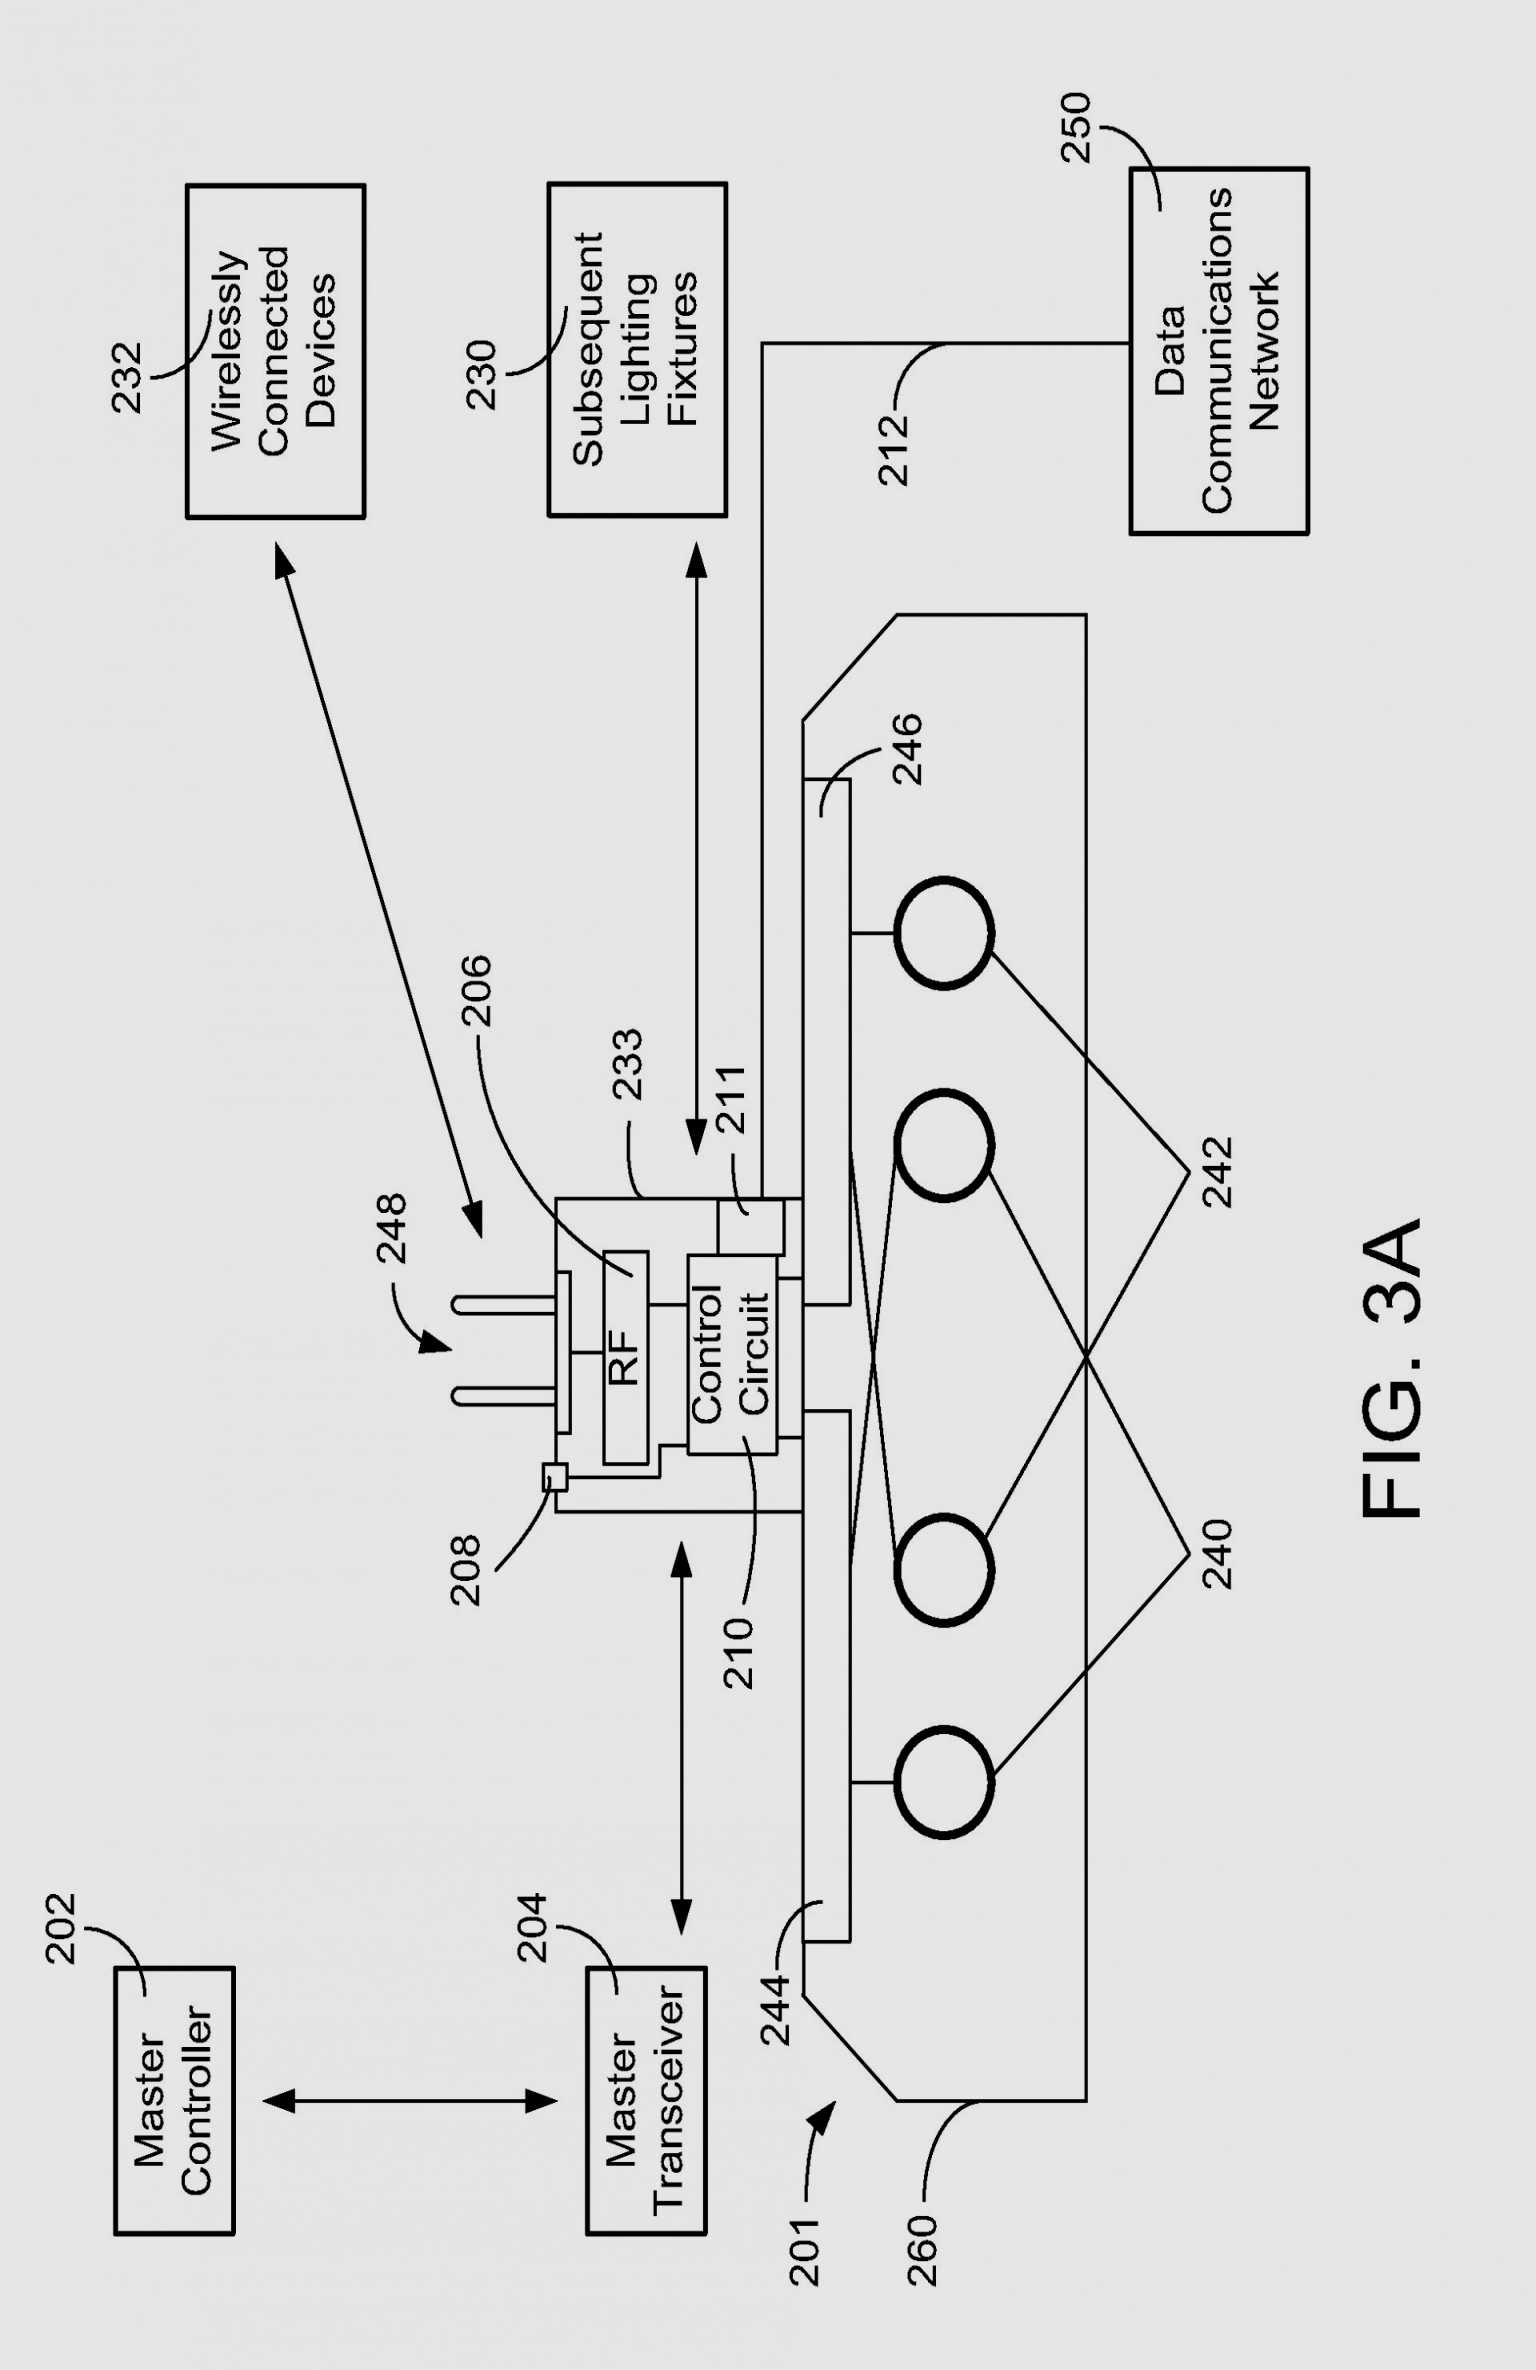 True Gdm 72F Wiring Diagram | Schematic Diagram - True Freezer T 49F Wiring Diagram